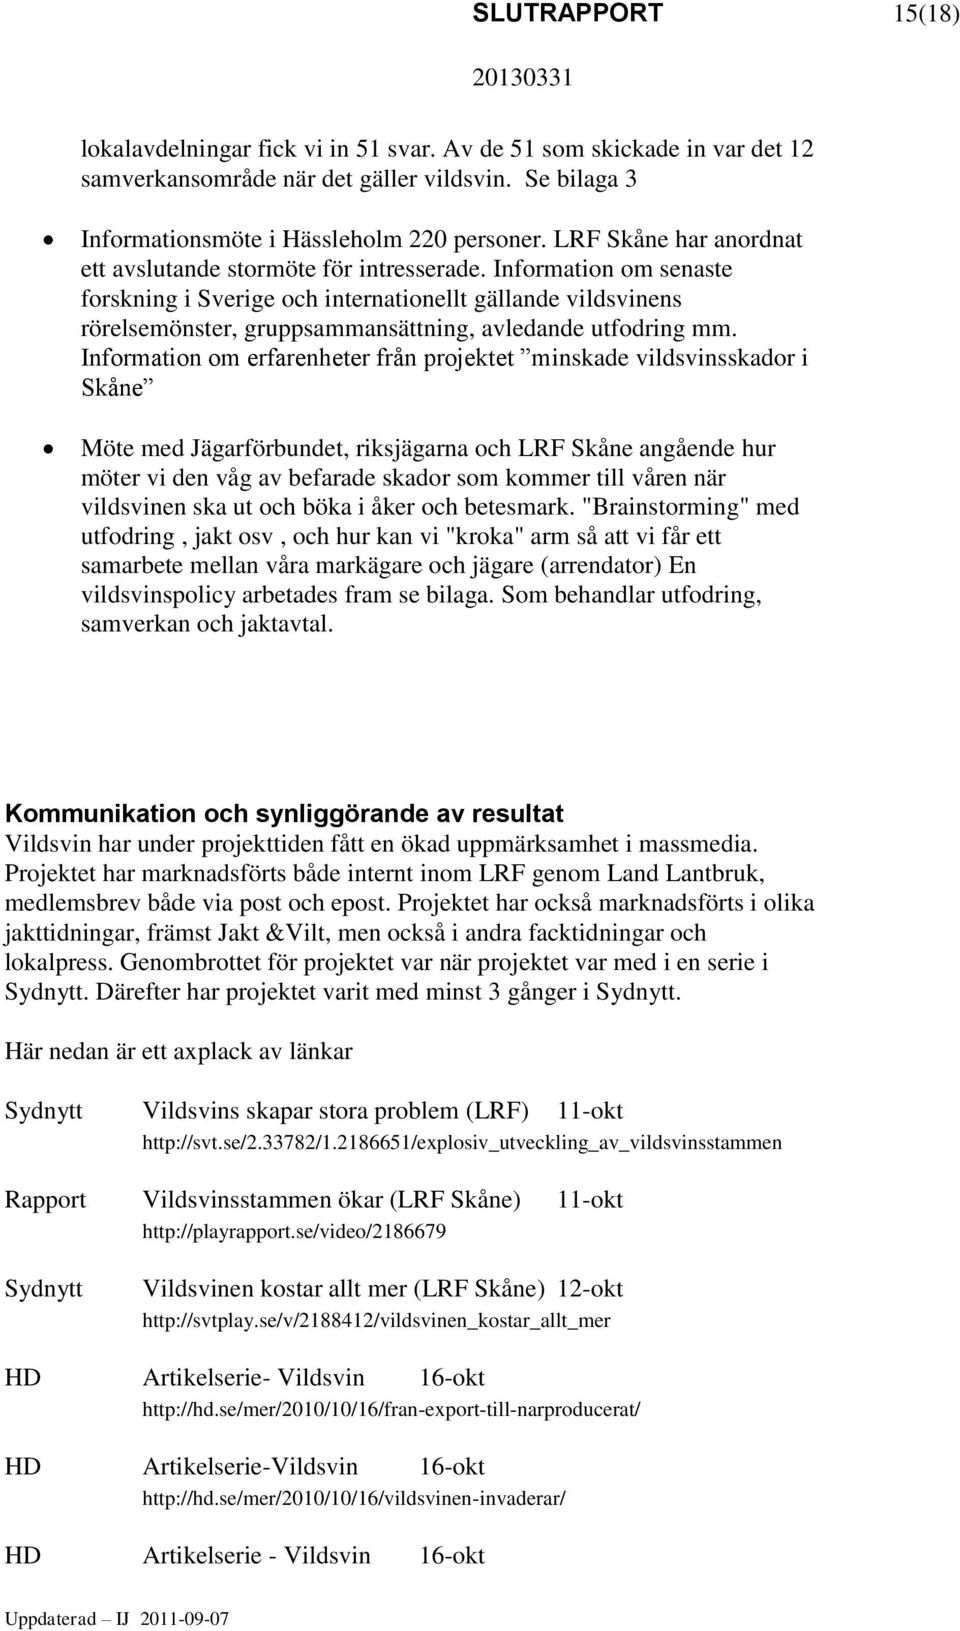 Information om senaste forskning i Sverige och internationellt gällande vildsvinens rörelsemönster, gruppsammansättning, avledande utfodring mm.